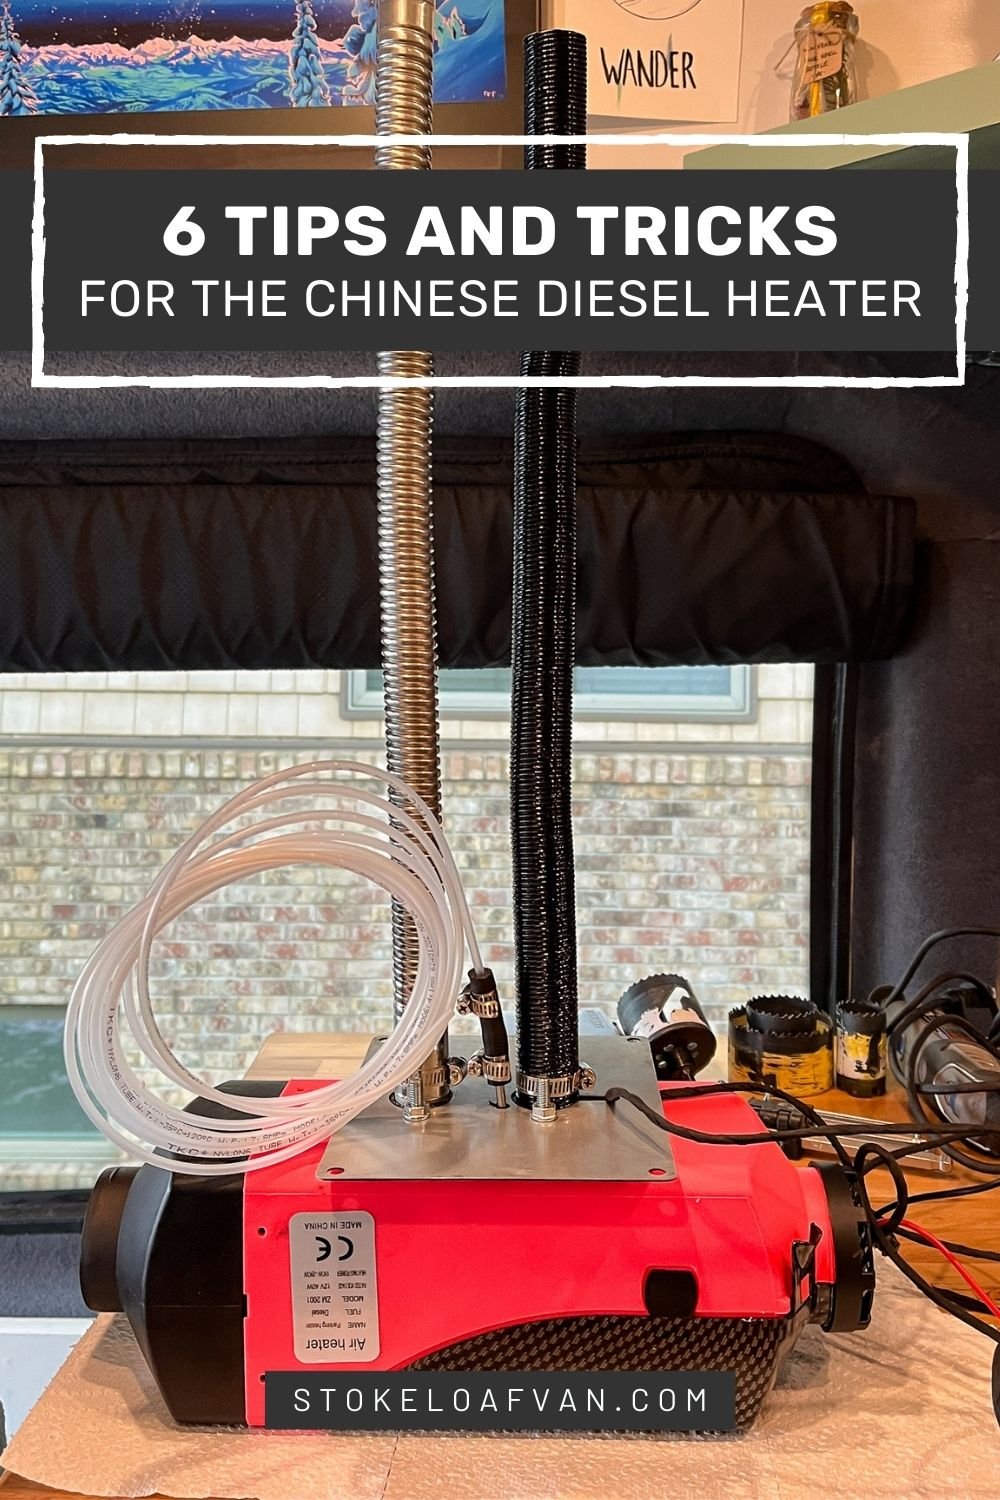 Hcalory heater E07 error : r/dieselheater